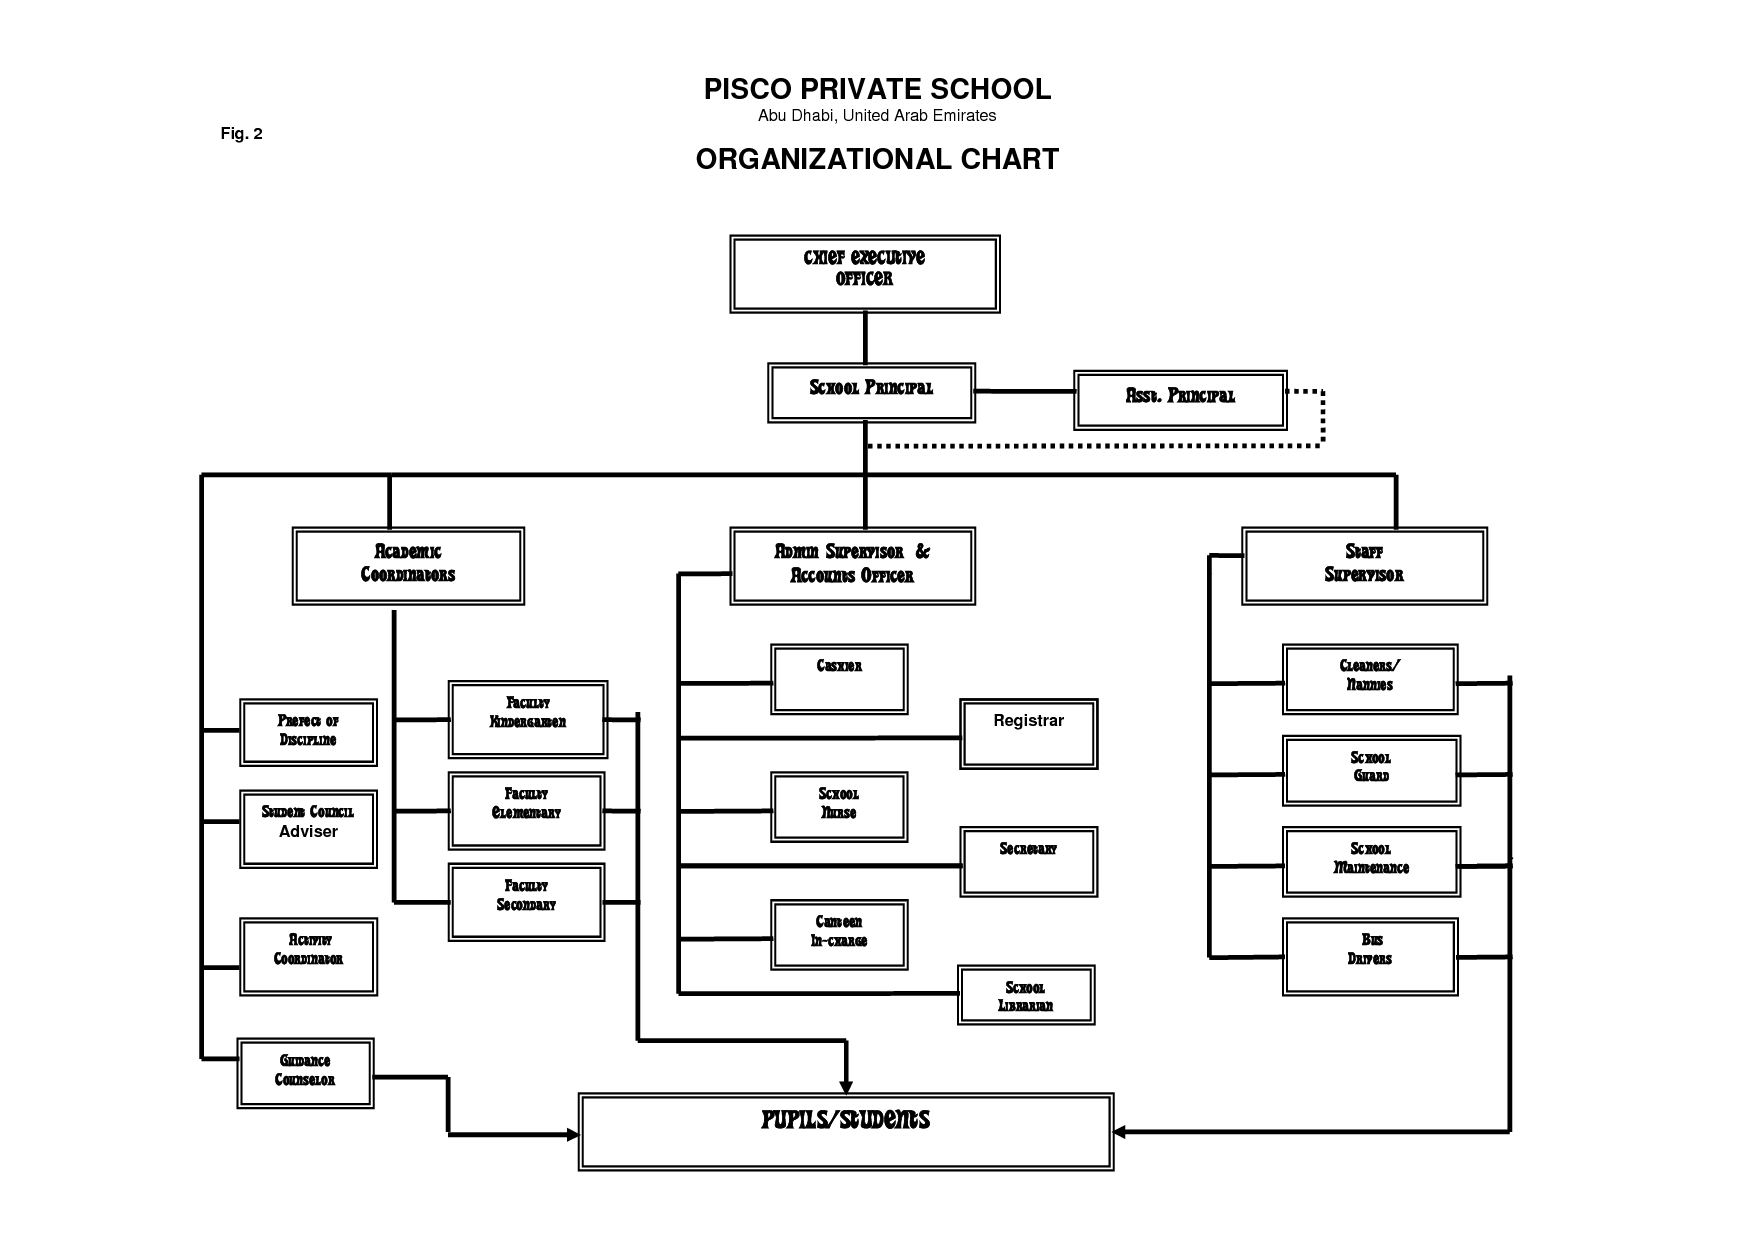 School Organizational Chart Template